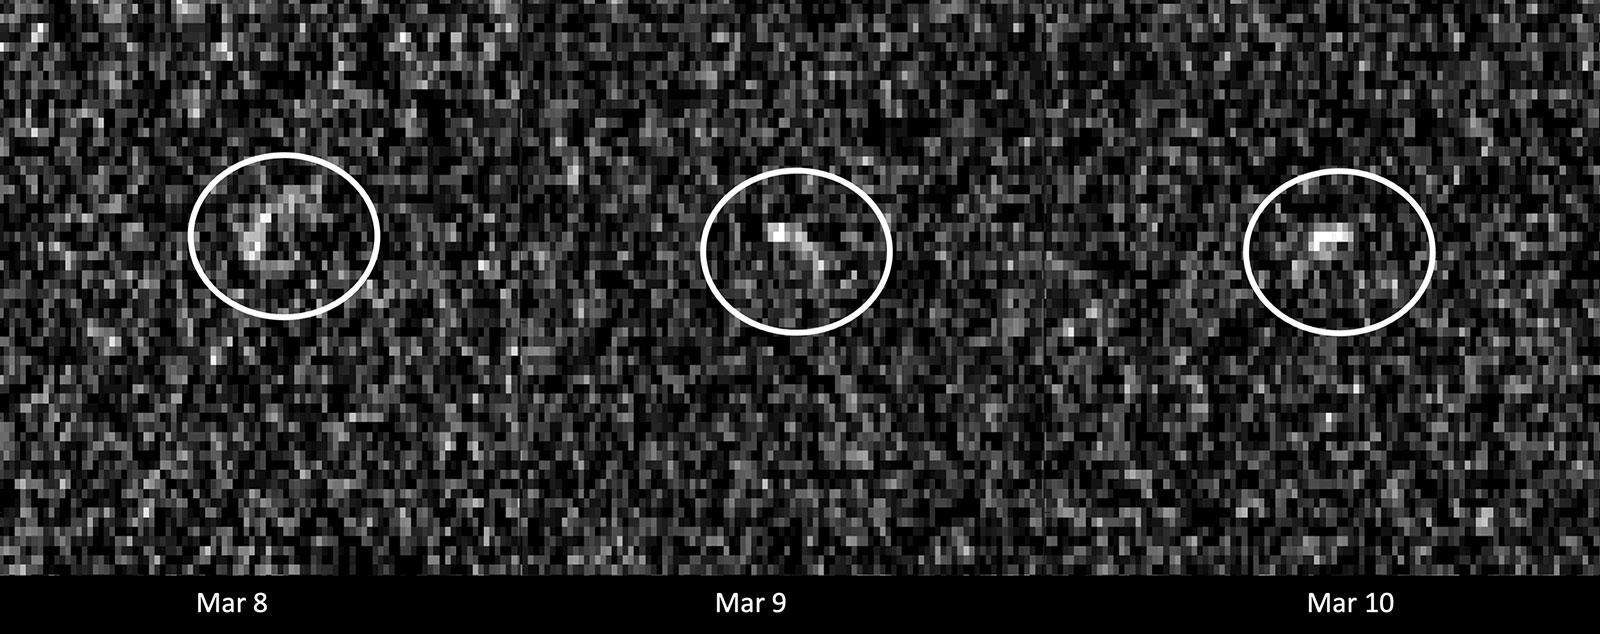 Tres imágenes pixeladas en escala de grises del asteroide Apophis (en un círculo) tomadas con radar